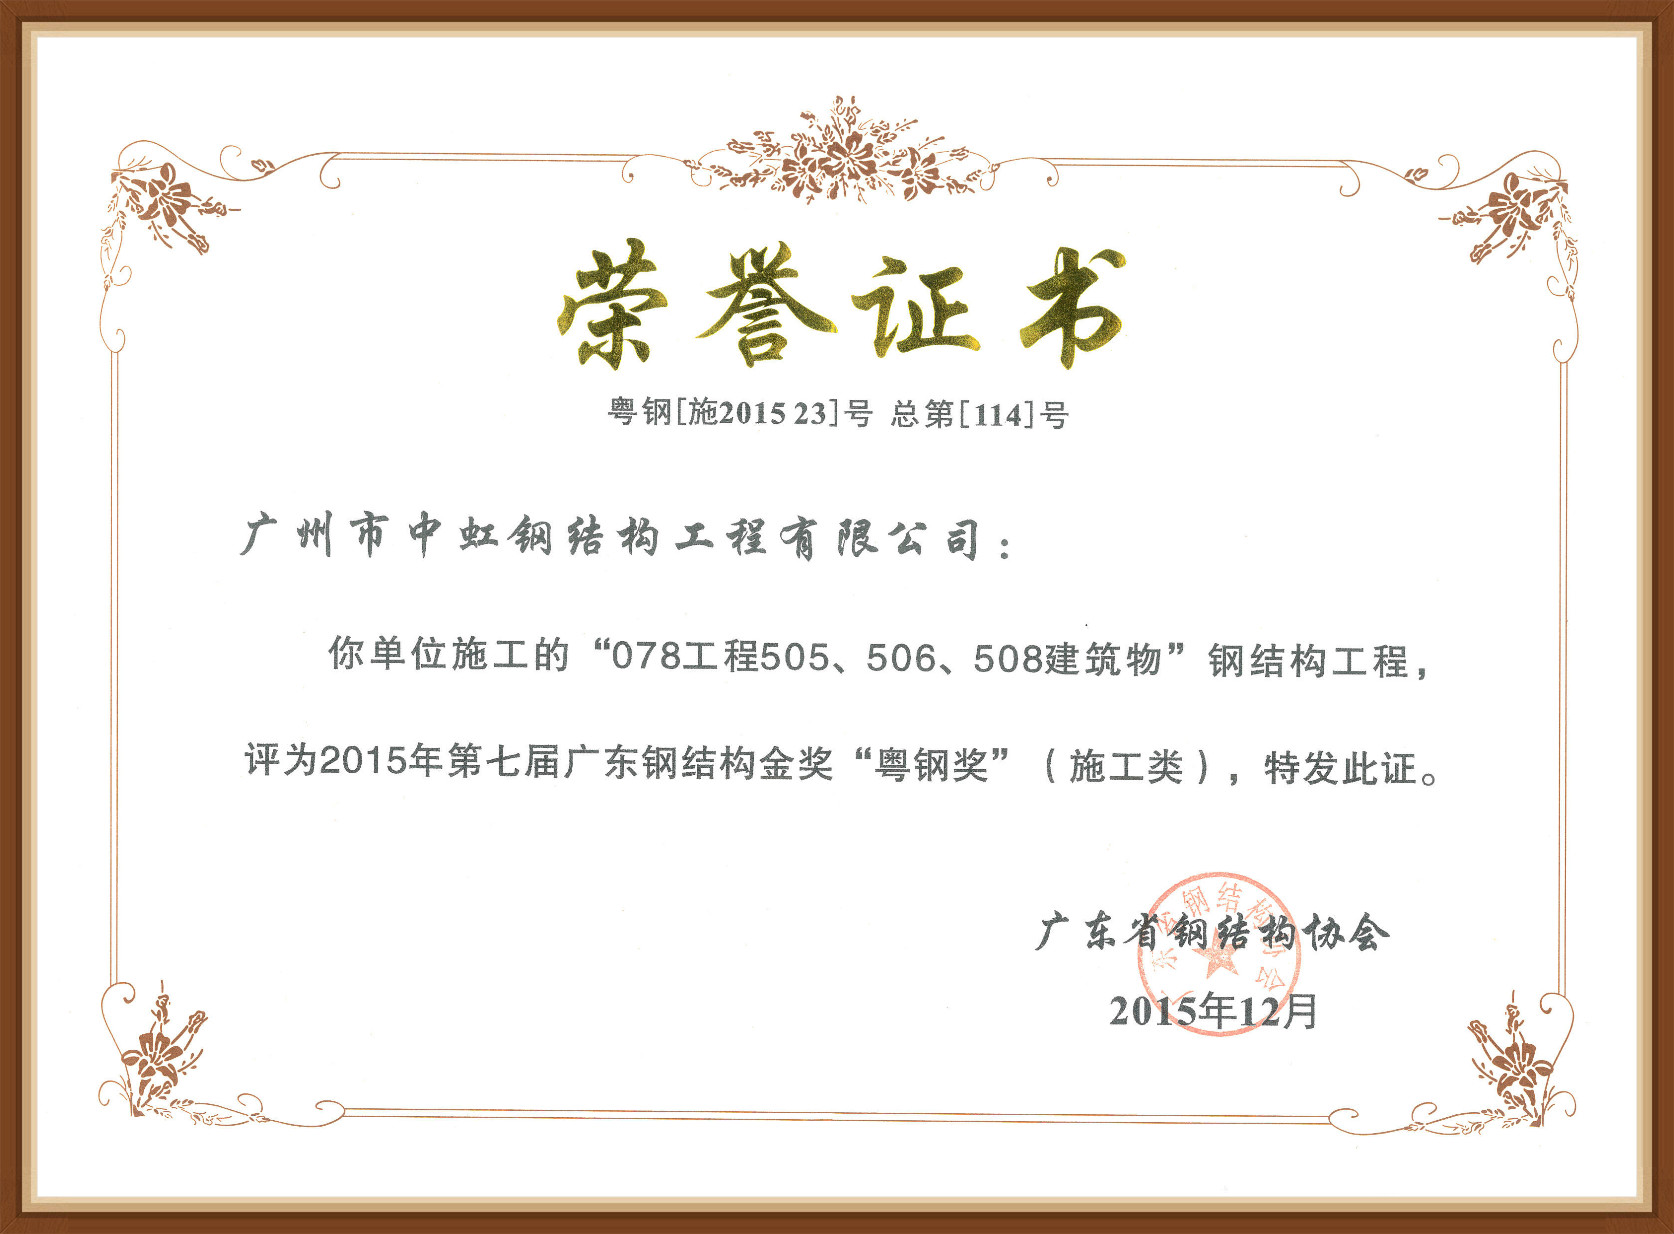 Guangdong Steel Award